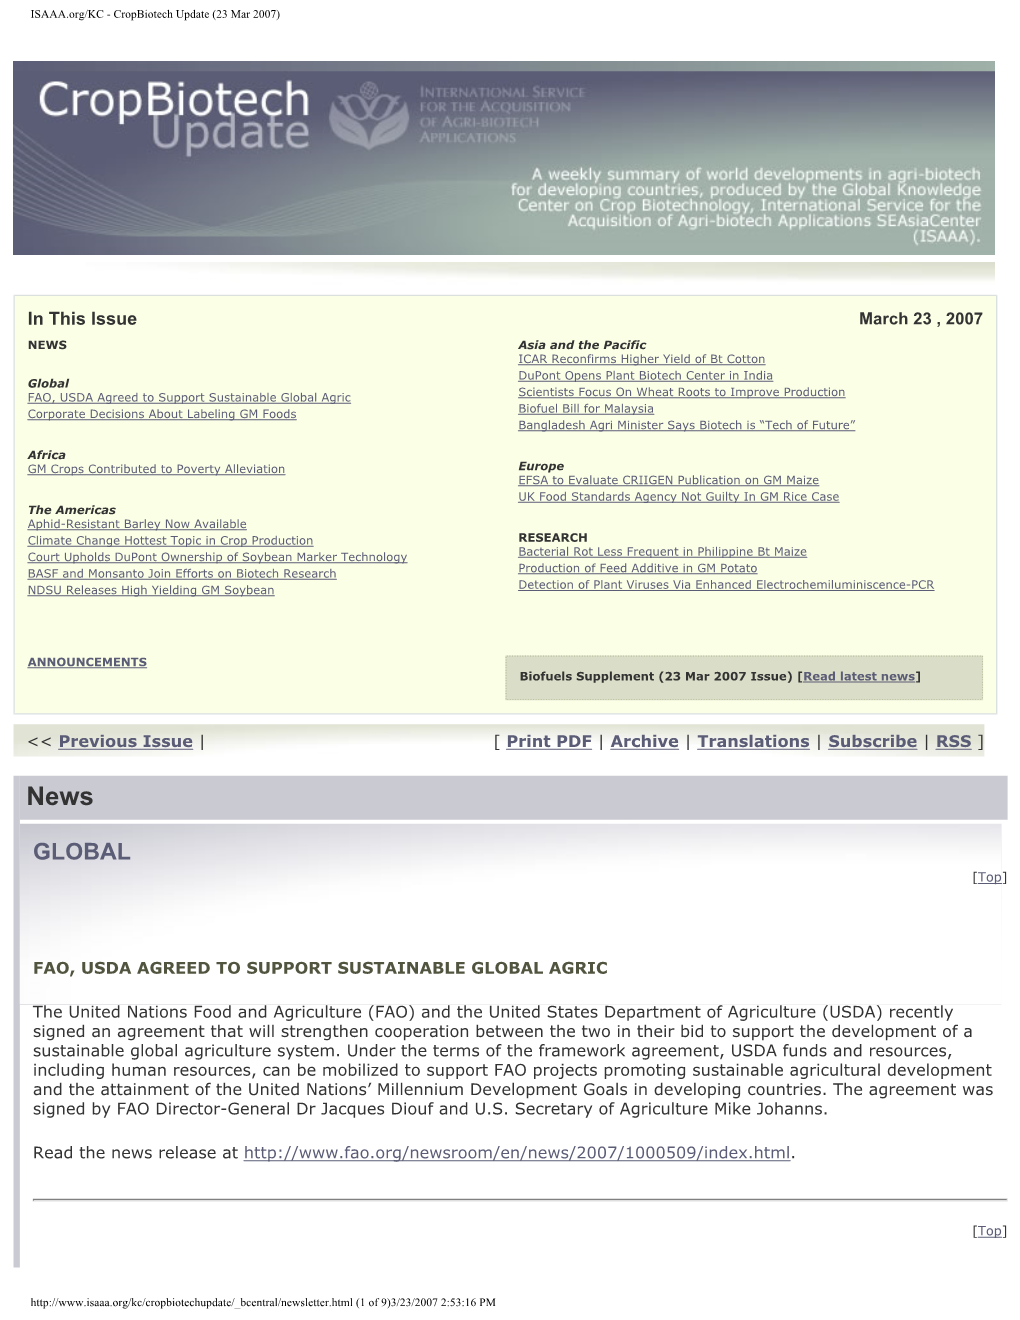 ISAAA.Org/KC - Cropbiotech Update (23 Mar 2007)